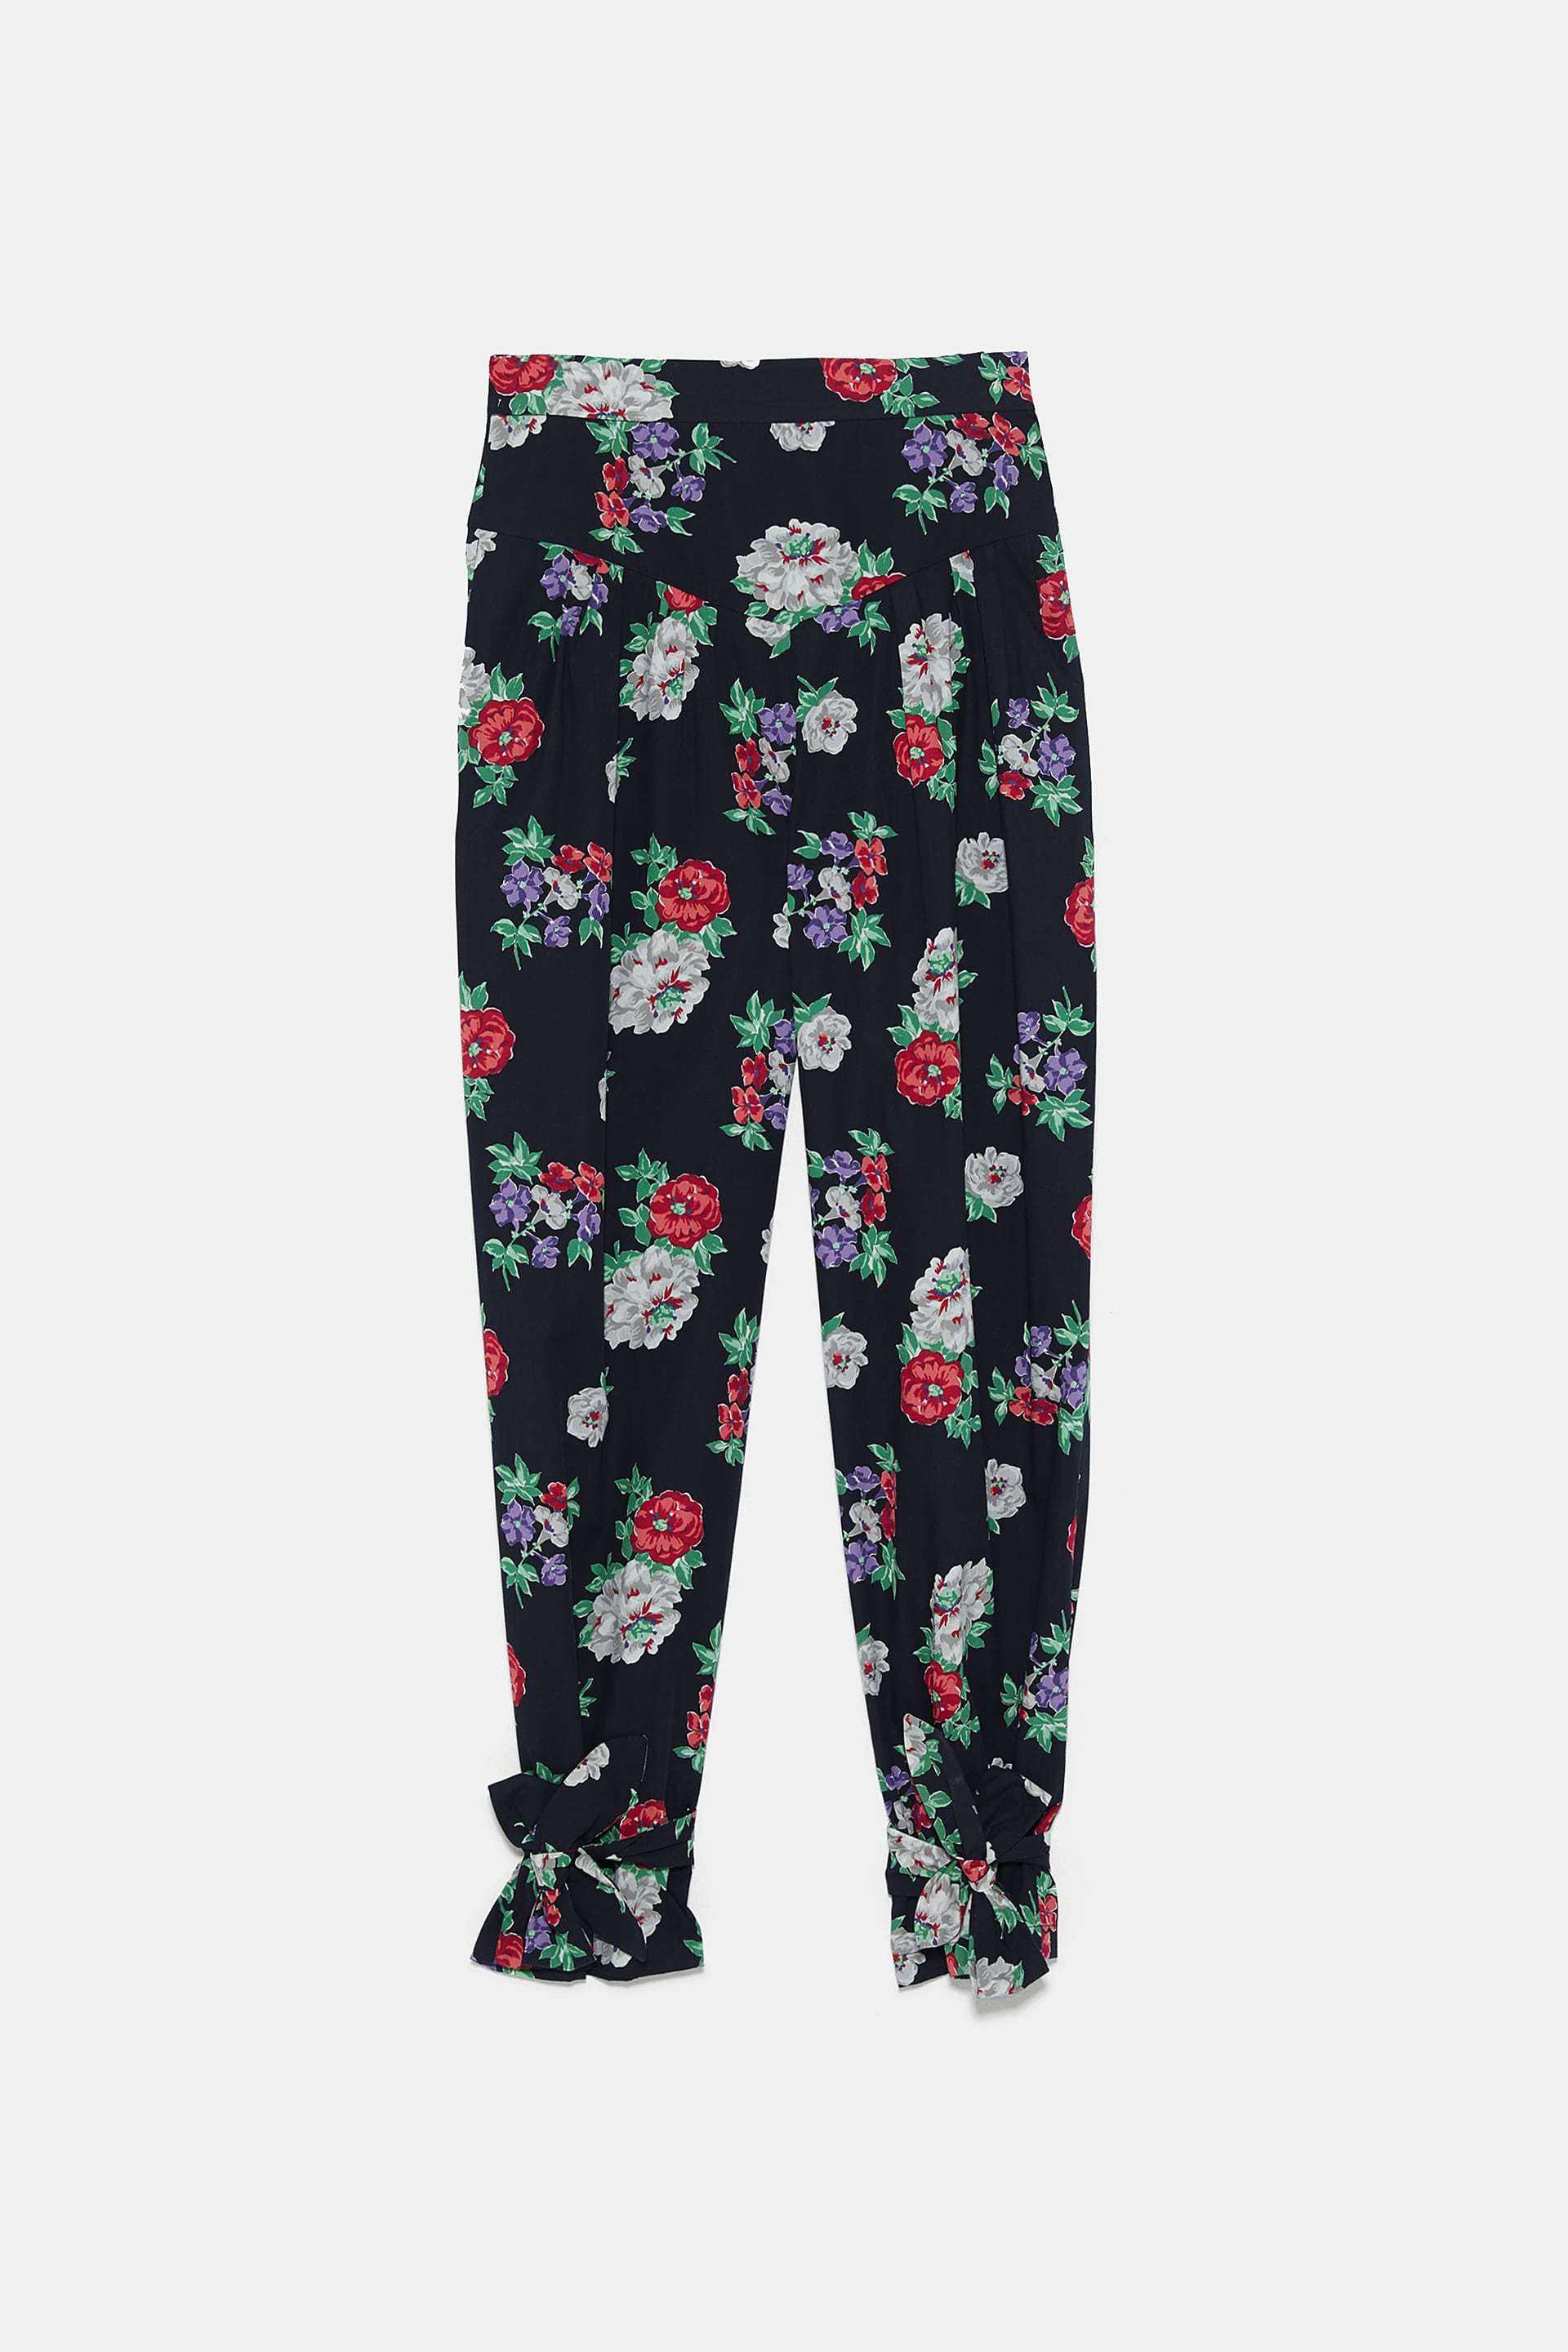 Pantalones de flores, de Zara (39,95 euros).